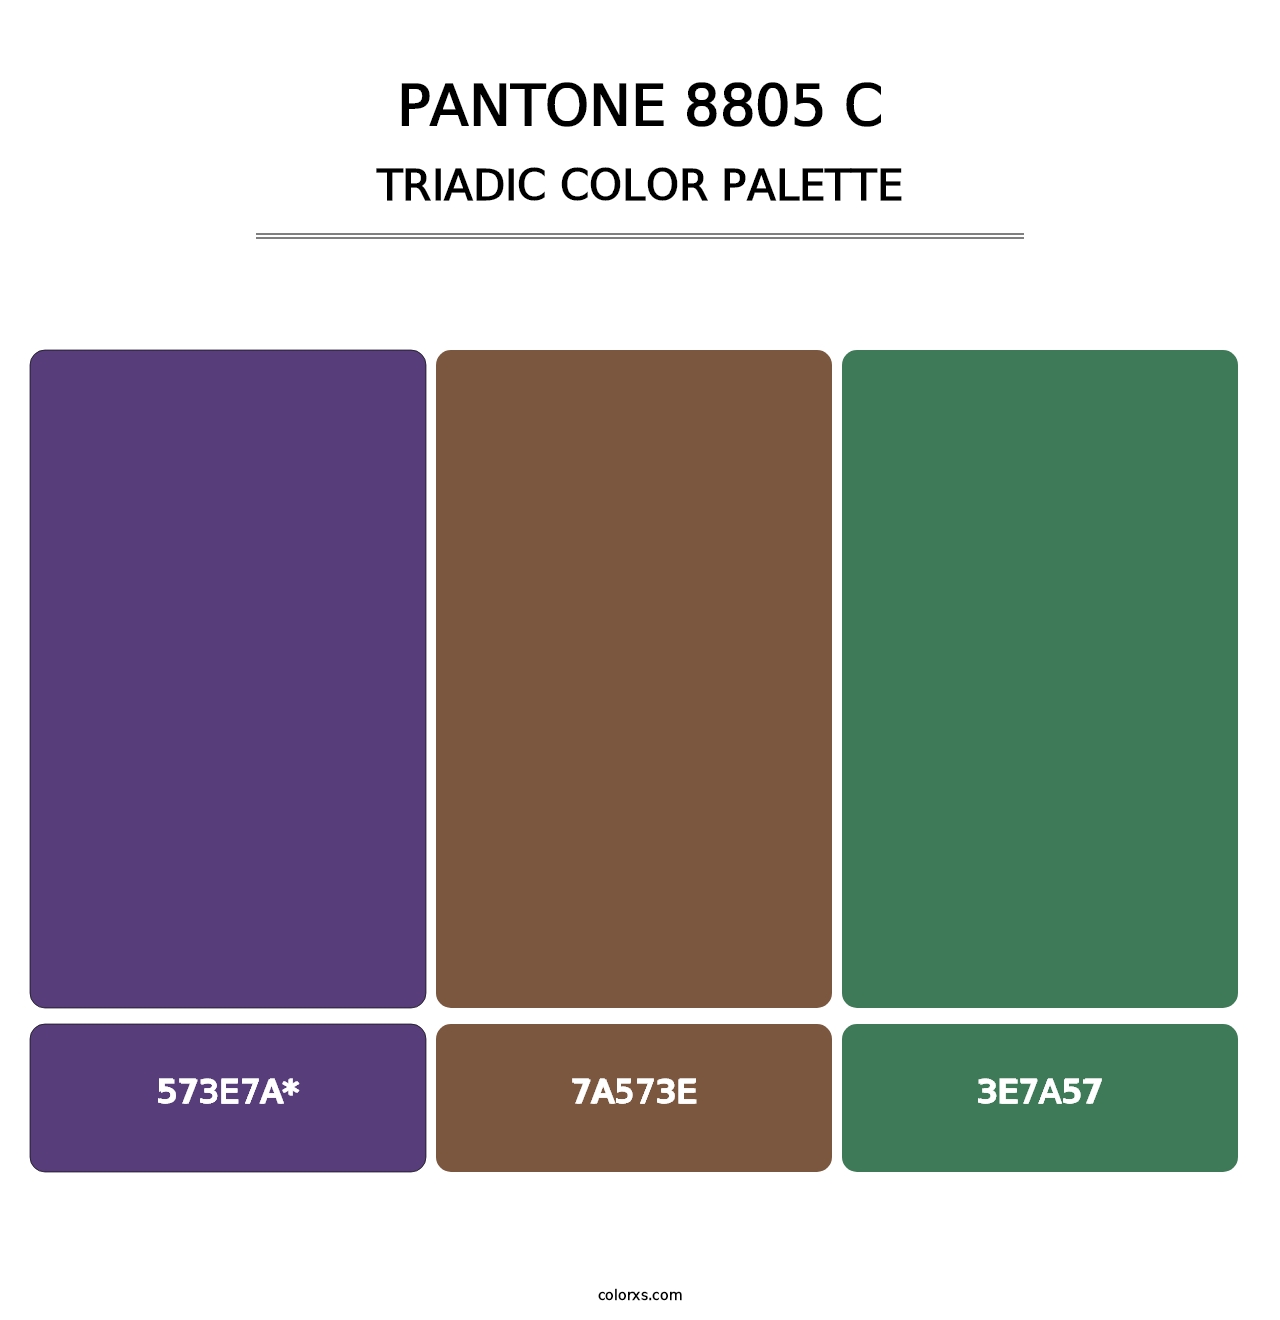 PANTONE 8805 C - Triadic Color Palette